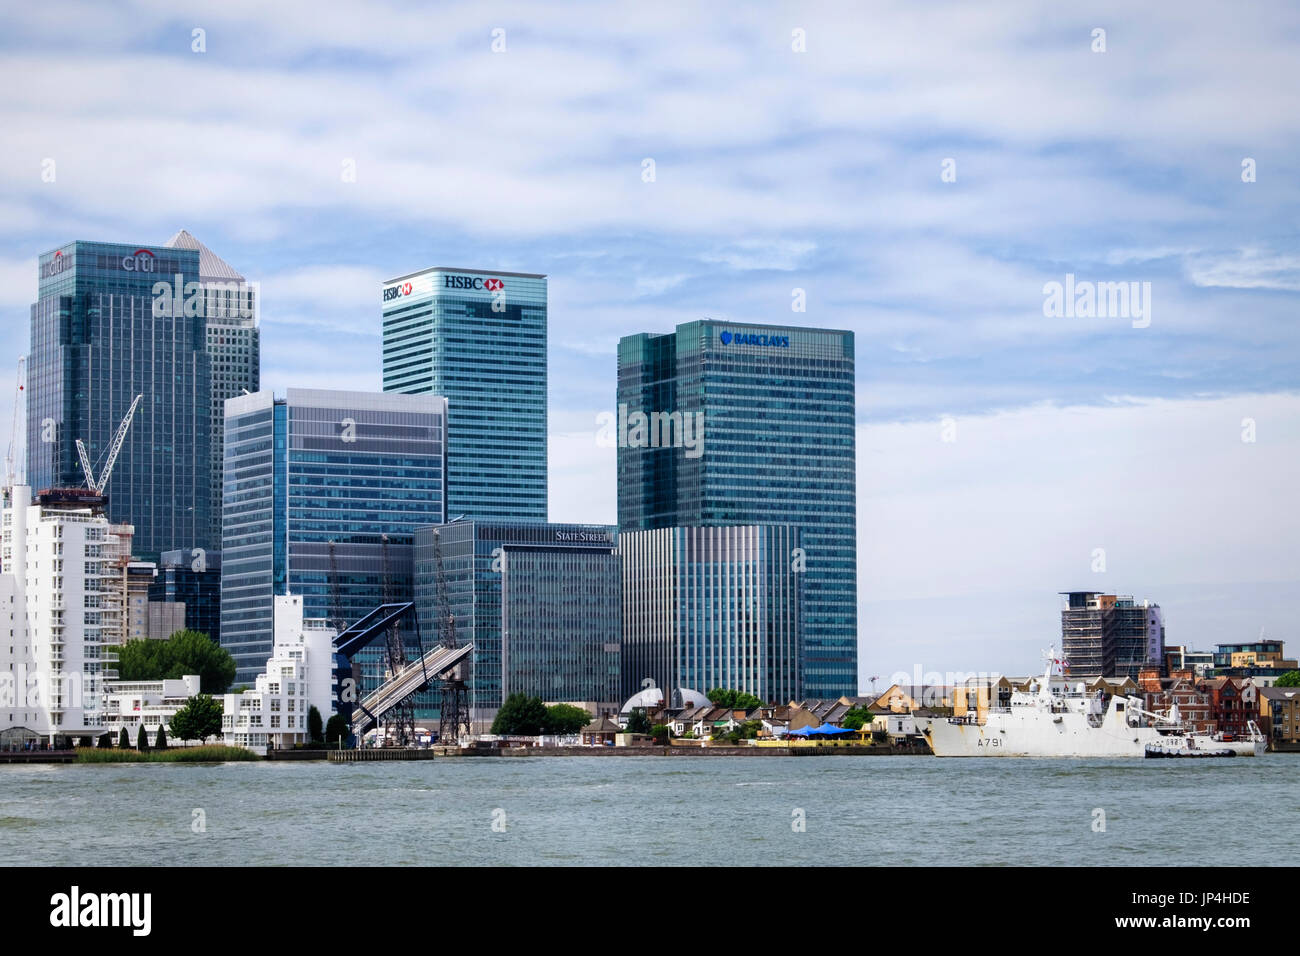 London, Canary Wharf, West India Dock Brücke auslöst, um Schiffe zu betreten. Hohe Wolkenkratzer Bankgebäuden des Finanzviertels, Barclays, HSBC & Citi. Stockfoto